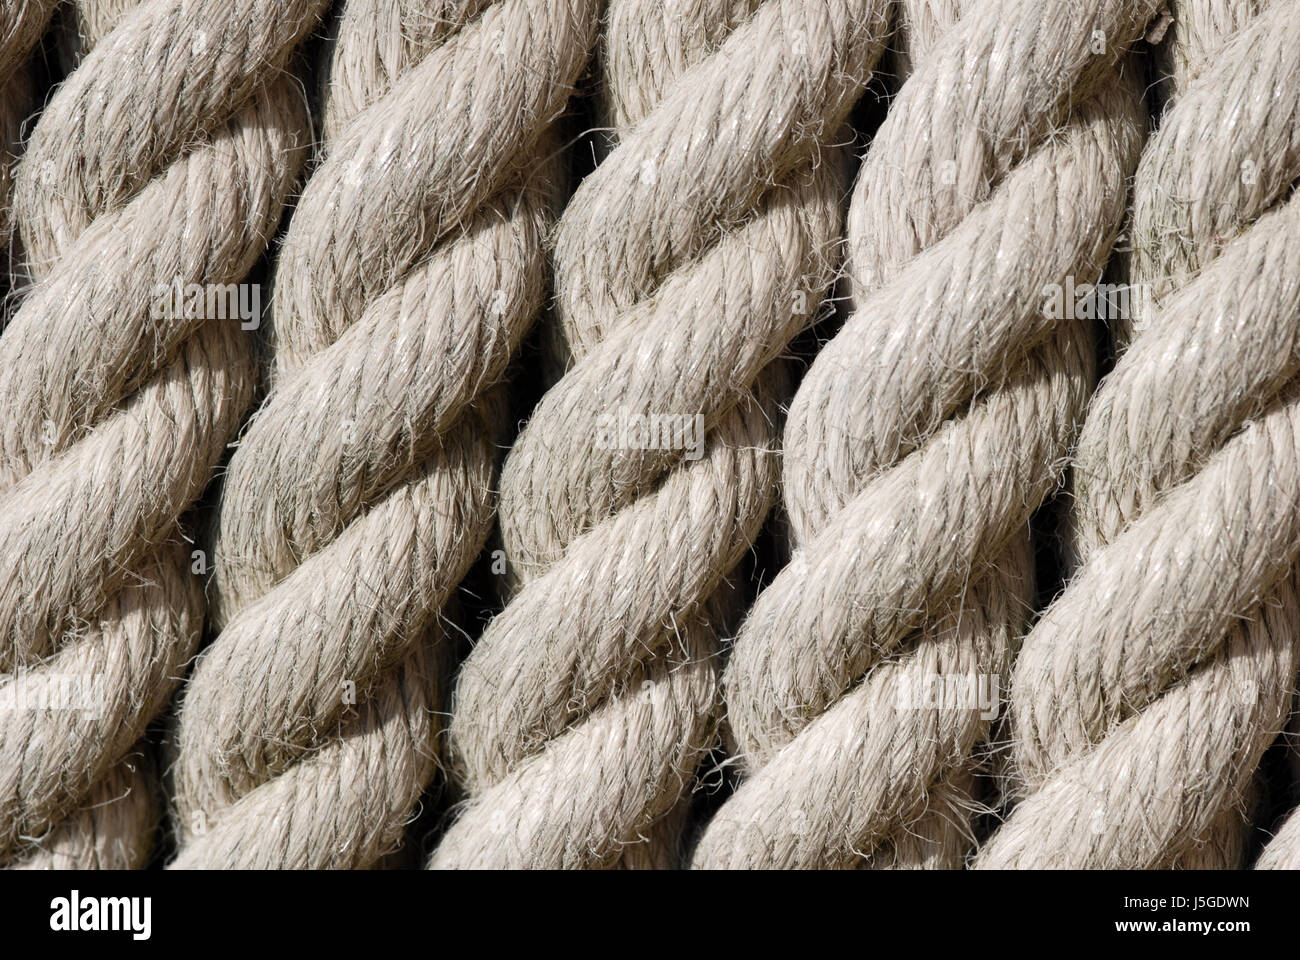 Industrie starke Schnur geflochten geflochtene Seile Schlepptau Struktur  Faser Seil Schnur Stockfotografie - Alamy